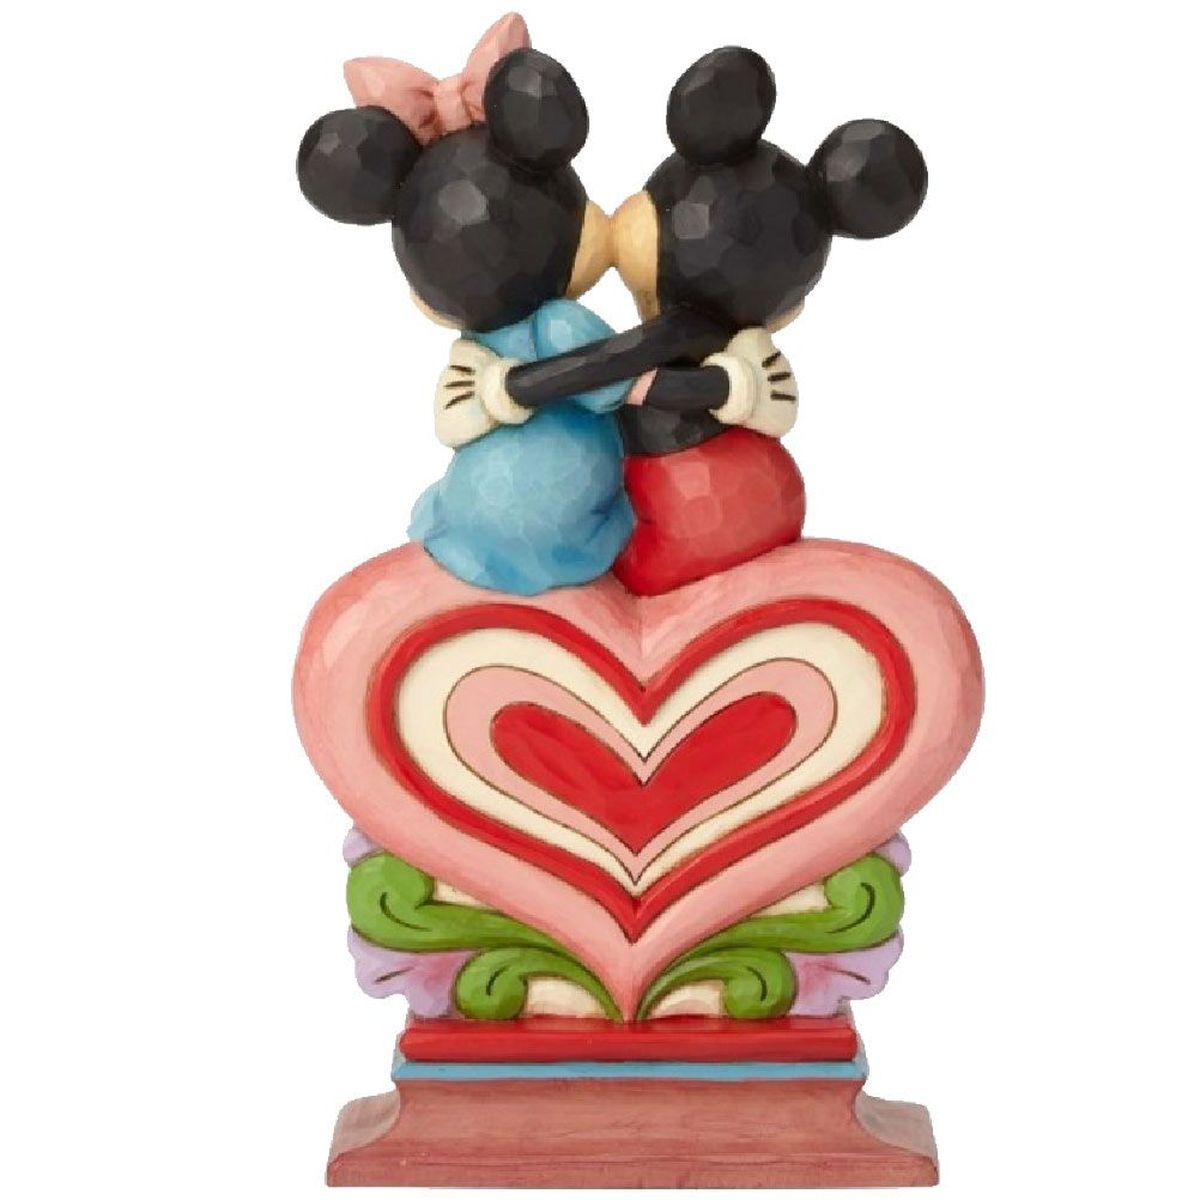 Figurine Collection Mickey et Minnie